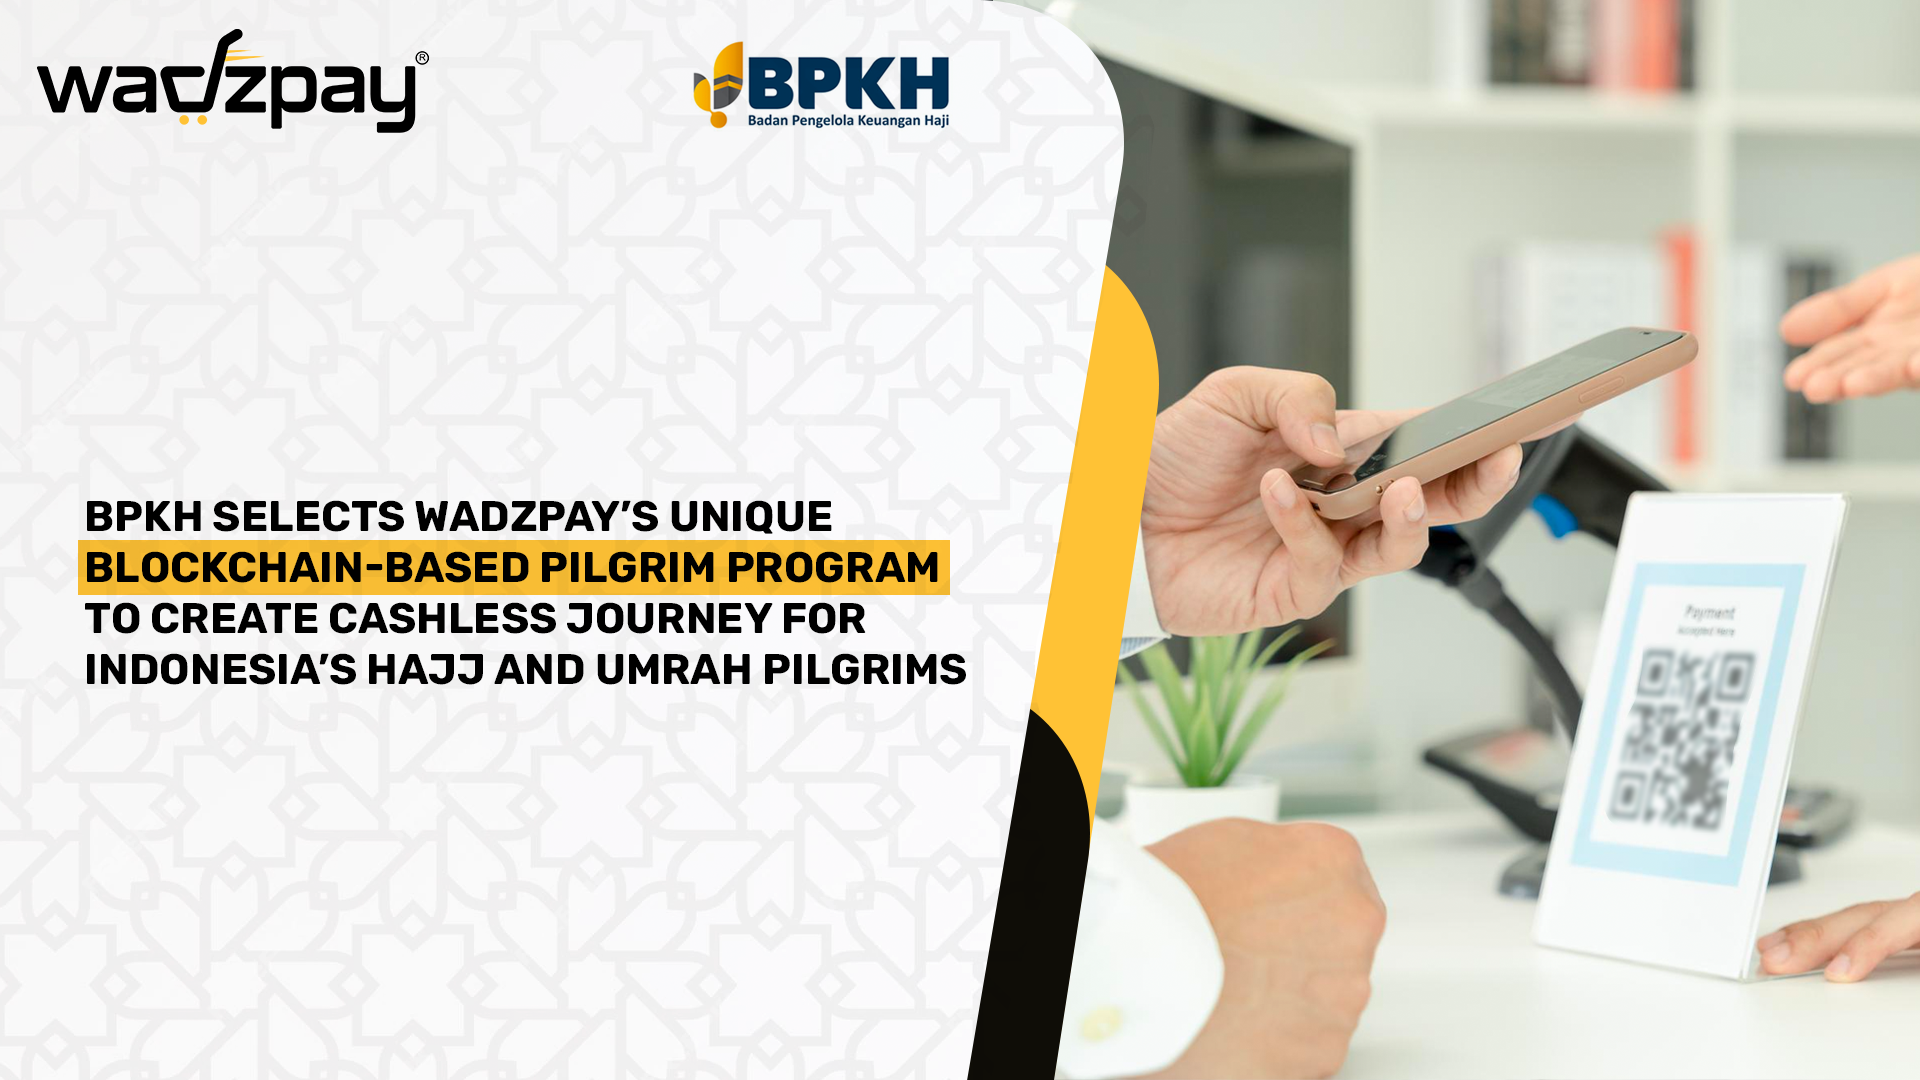 Bpkh Selects Wadzpay’s Unique Blockchain-based Pilgrim Program To Create Cashless Journey For Indonesia’s Hajj And Umrah Pilgrims.